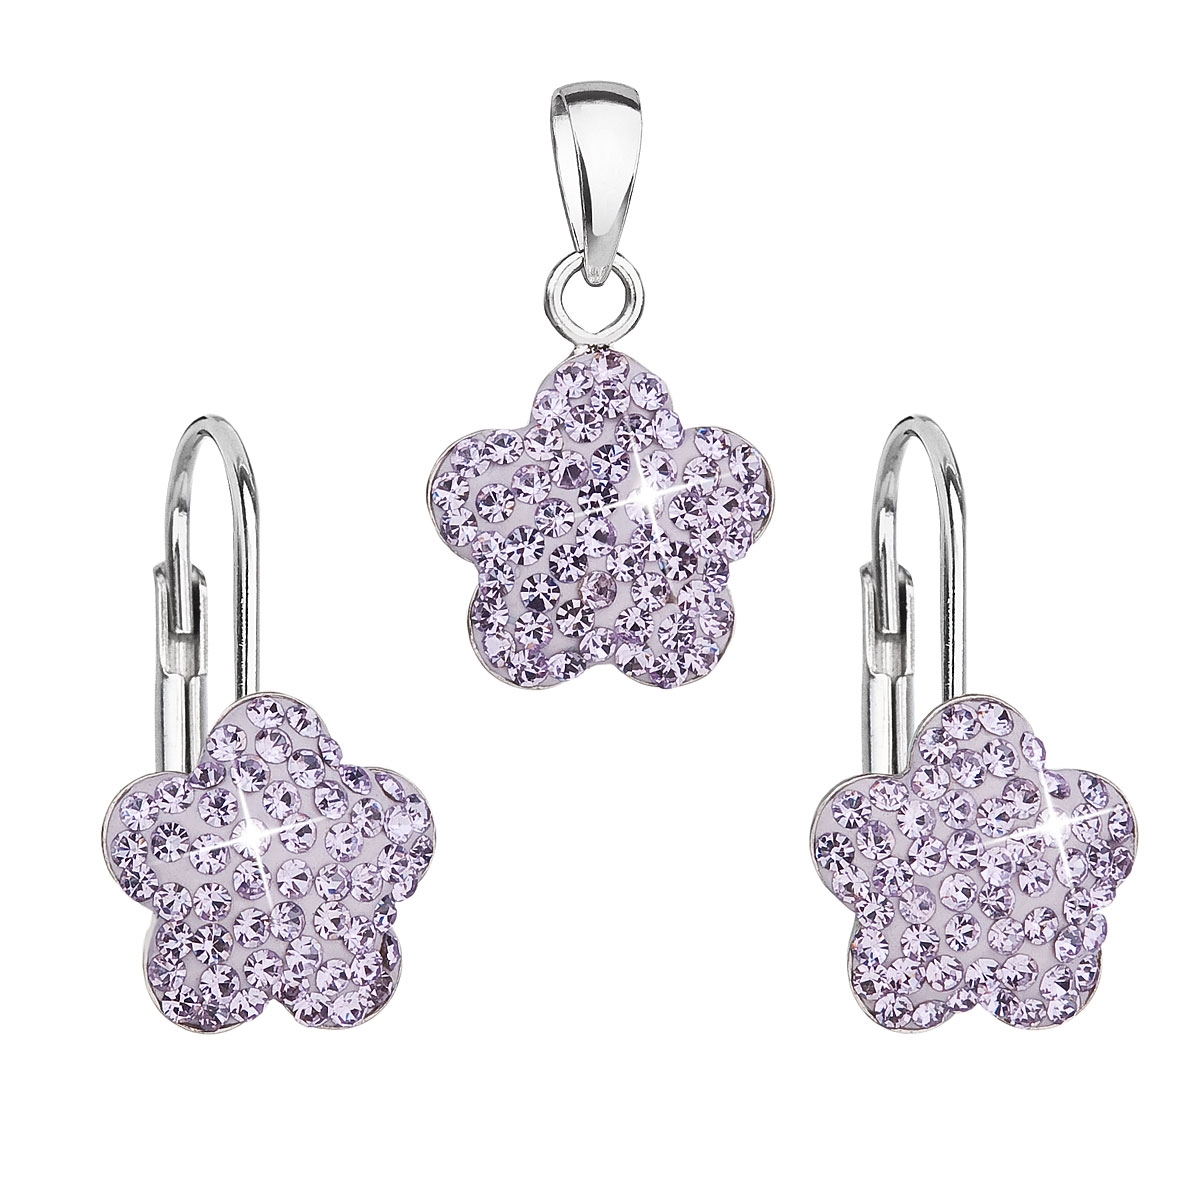 Súprava strieborných šperkov - kvetinky s kryštálmi Crystals from Swarovski ® Violet